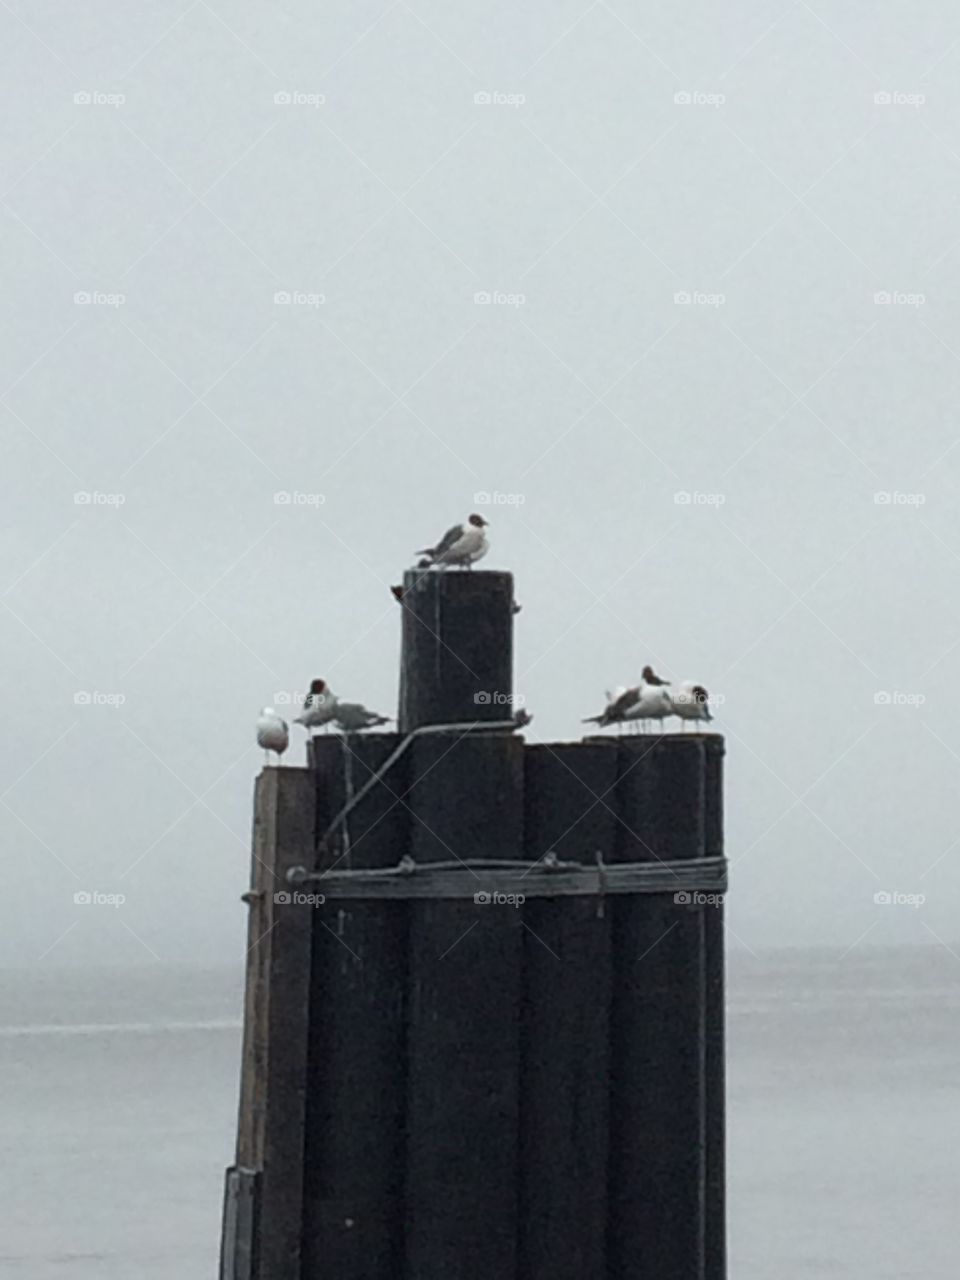 seagulls on a pylon